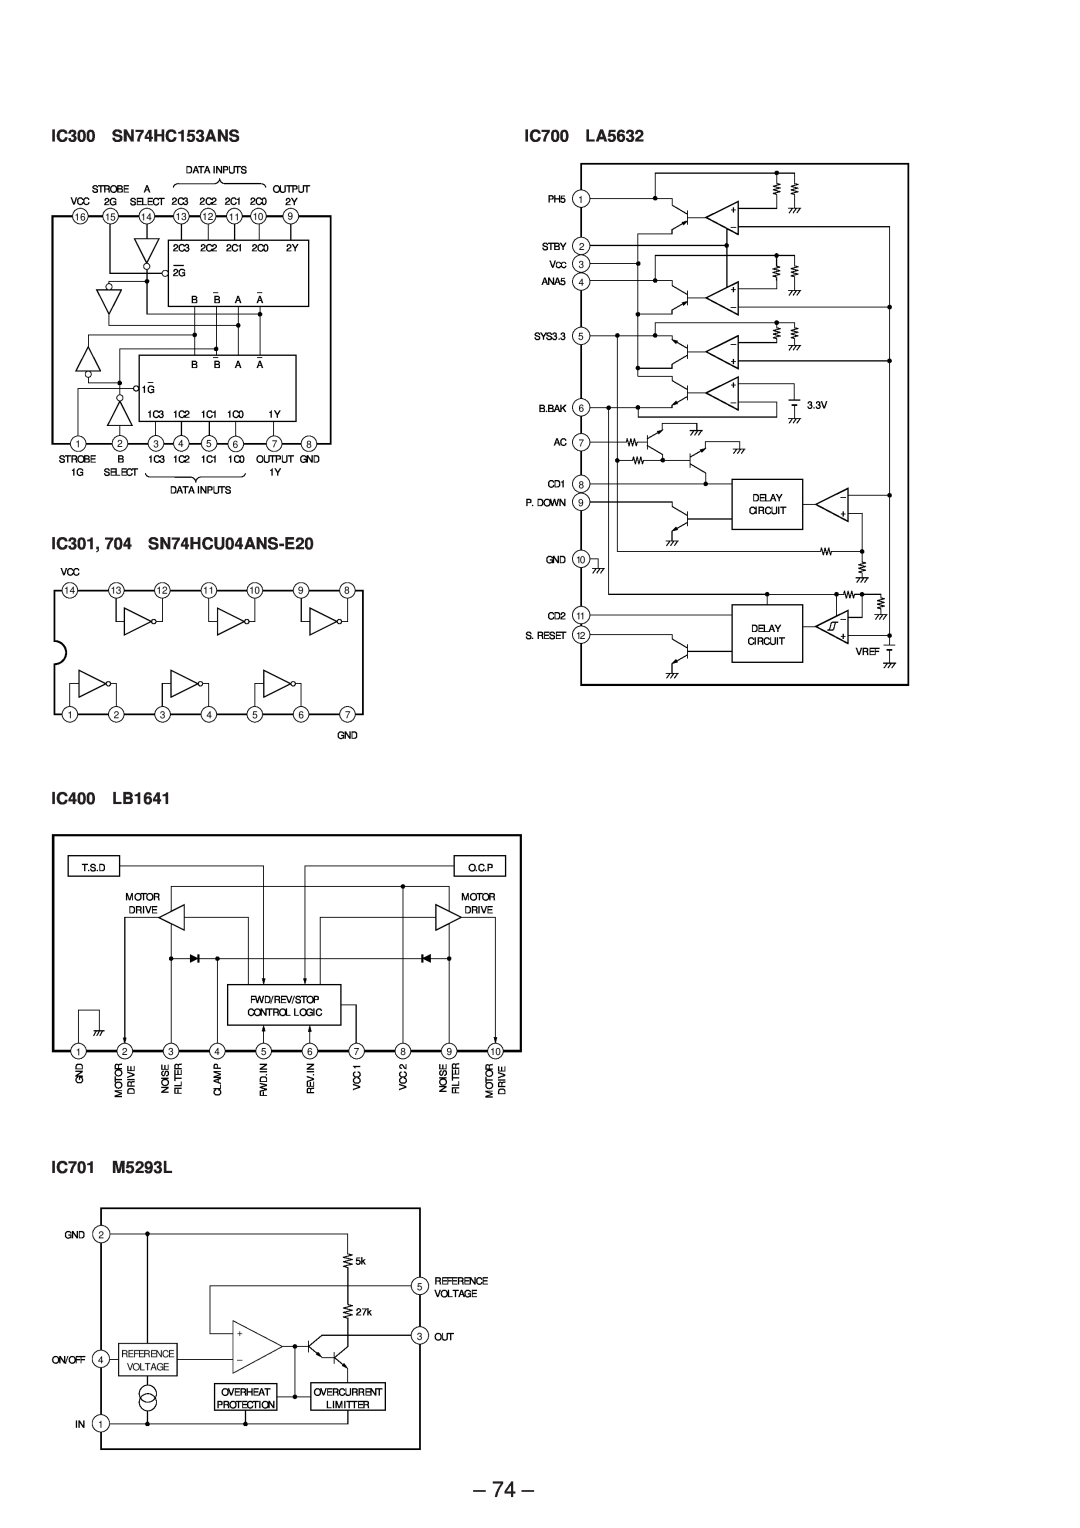 Sony MDS-JB920 service manual IC300, SN74HC153ANS, IC700, LA5632, IC301, SN74HCU04ANS-E20, IC400, LB1641, IC701, M5293L 